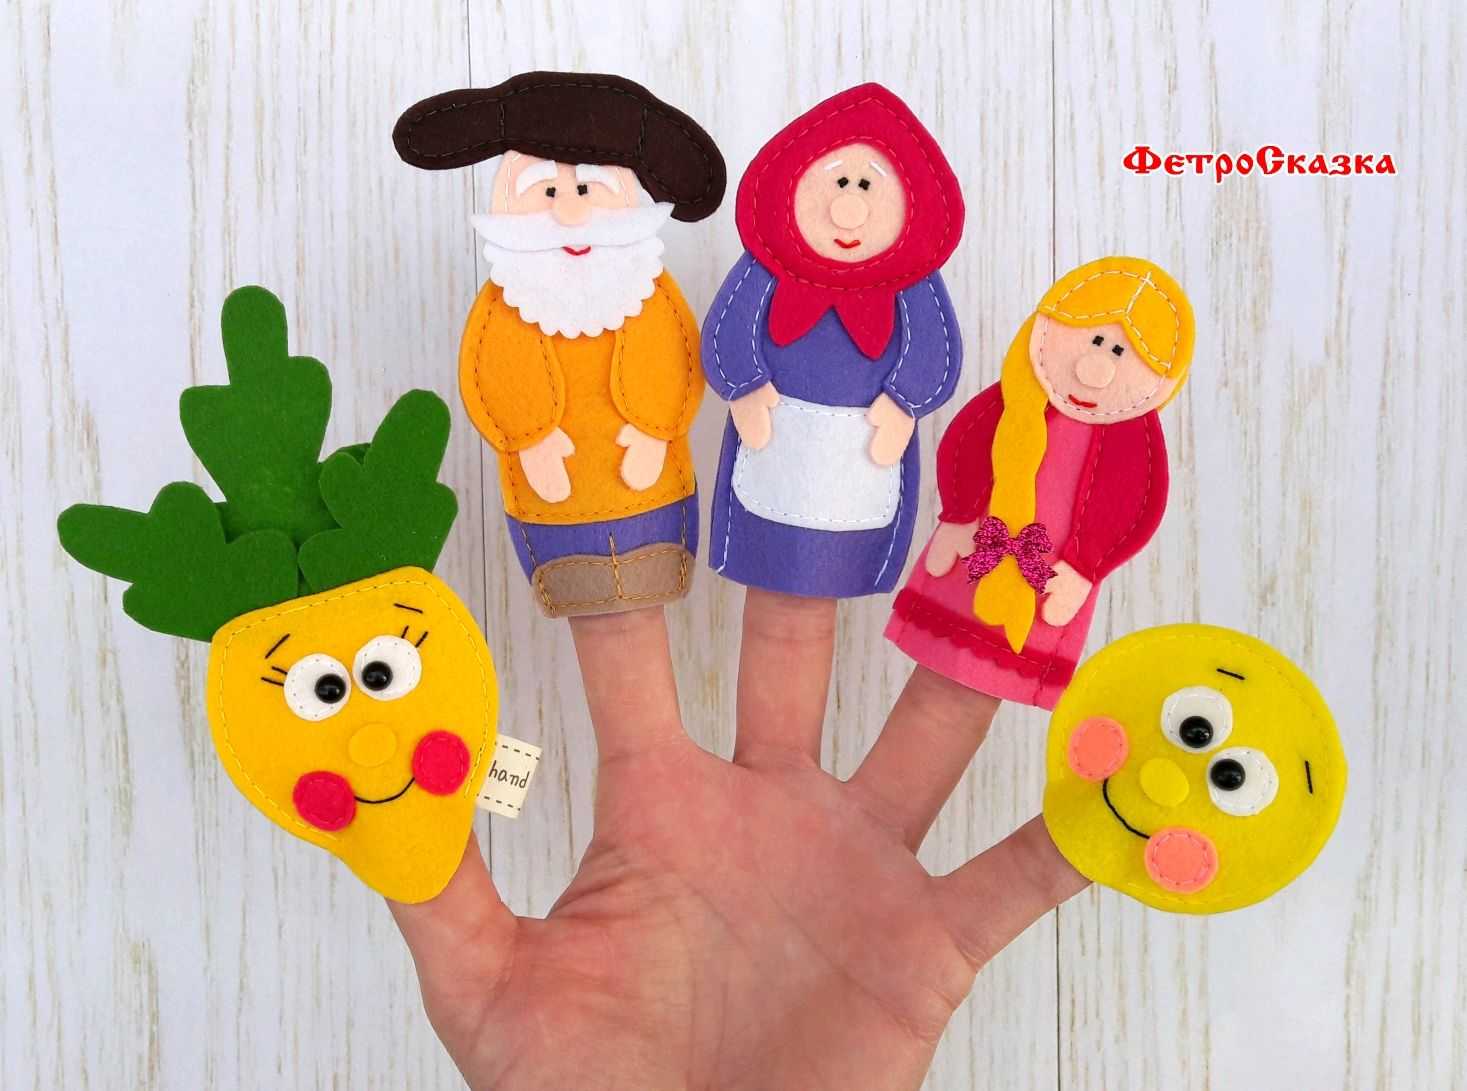 Как сделать кукольный театр своими руками в детский сад